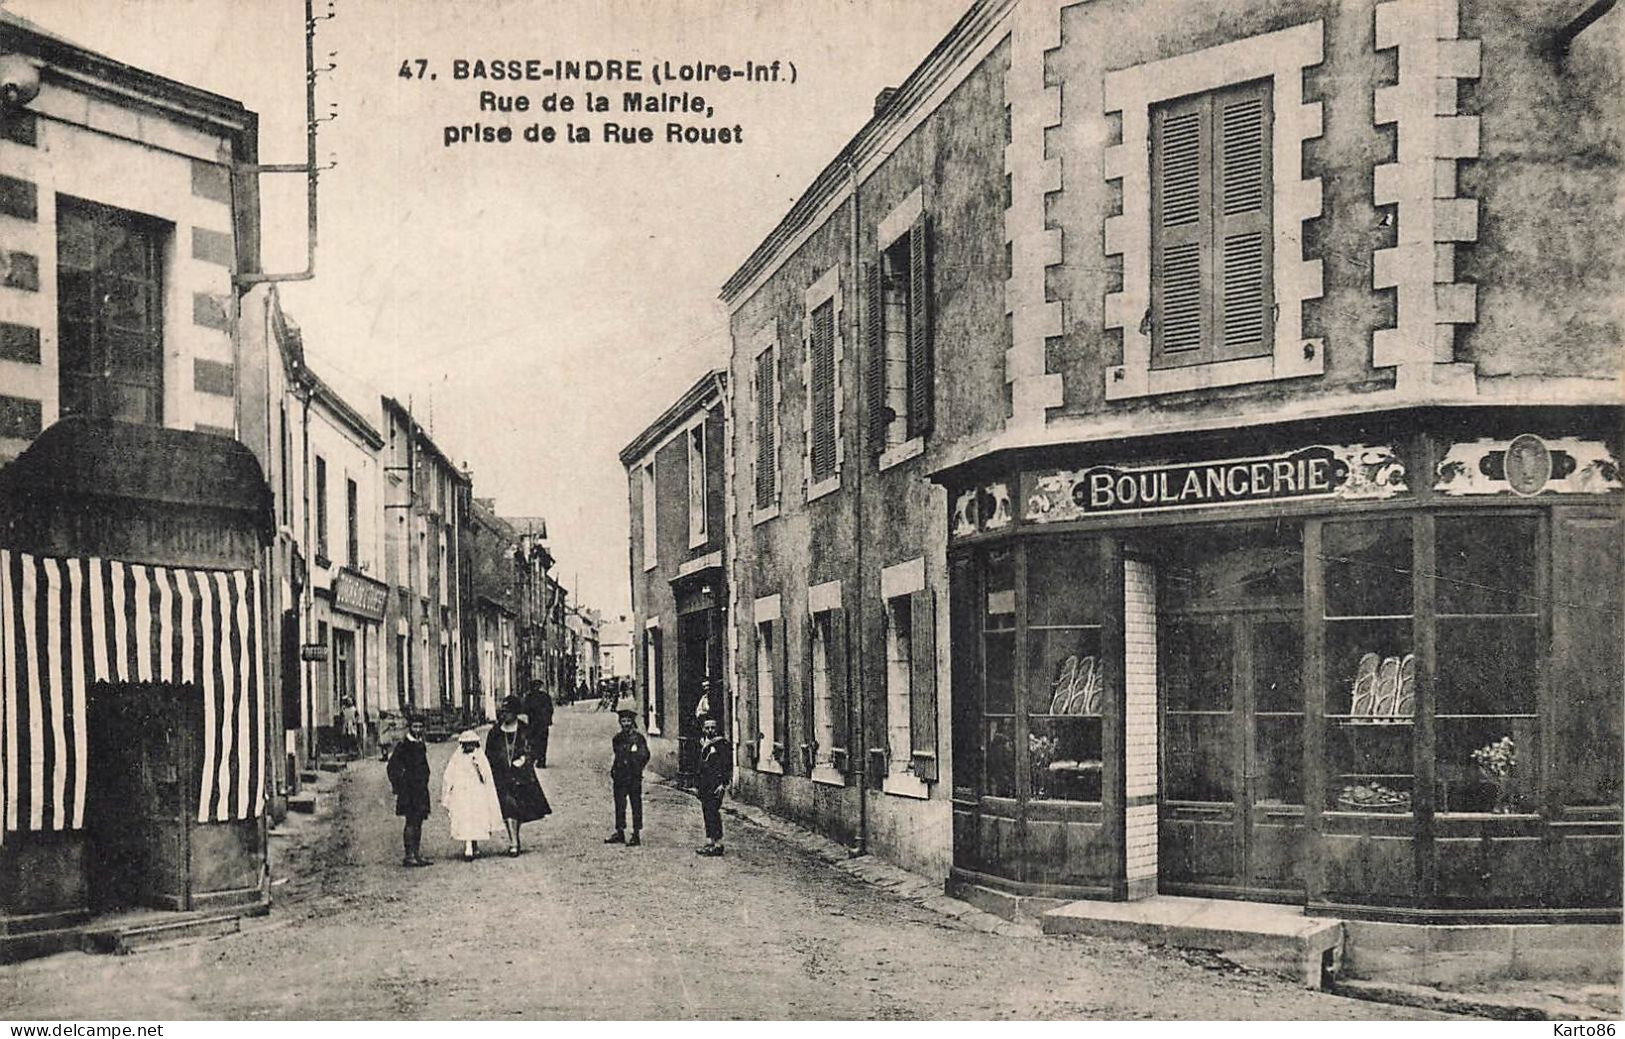 Basse Indre * Boulangerie * Rue De La Mairie Prise De La Rue Rouet * Commerces Magasin Villageois - Basse-Indre